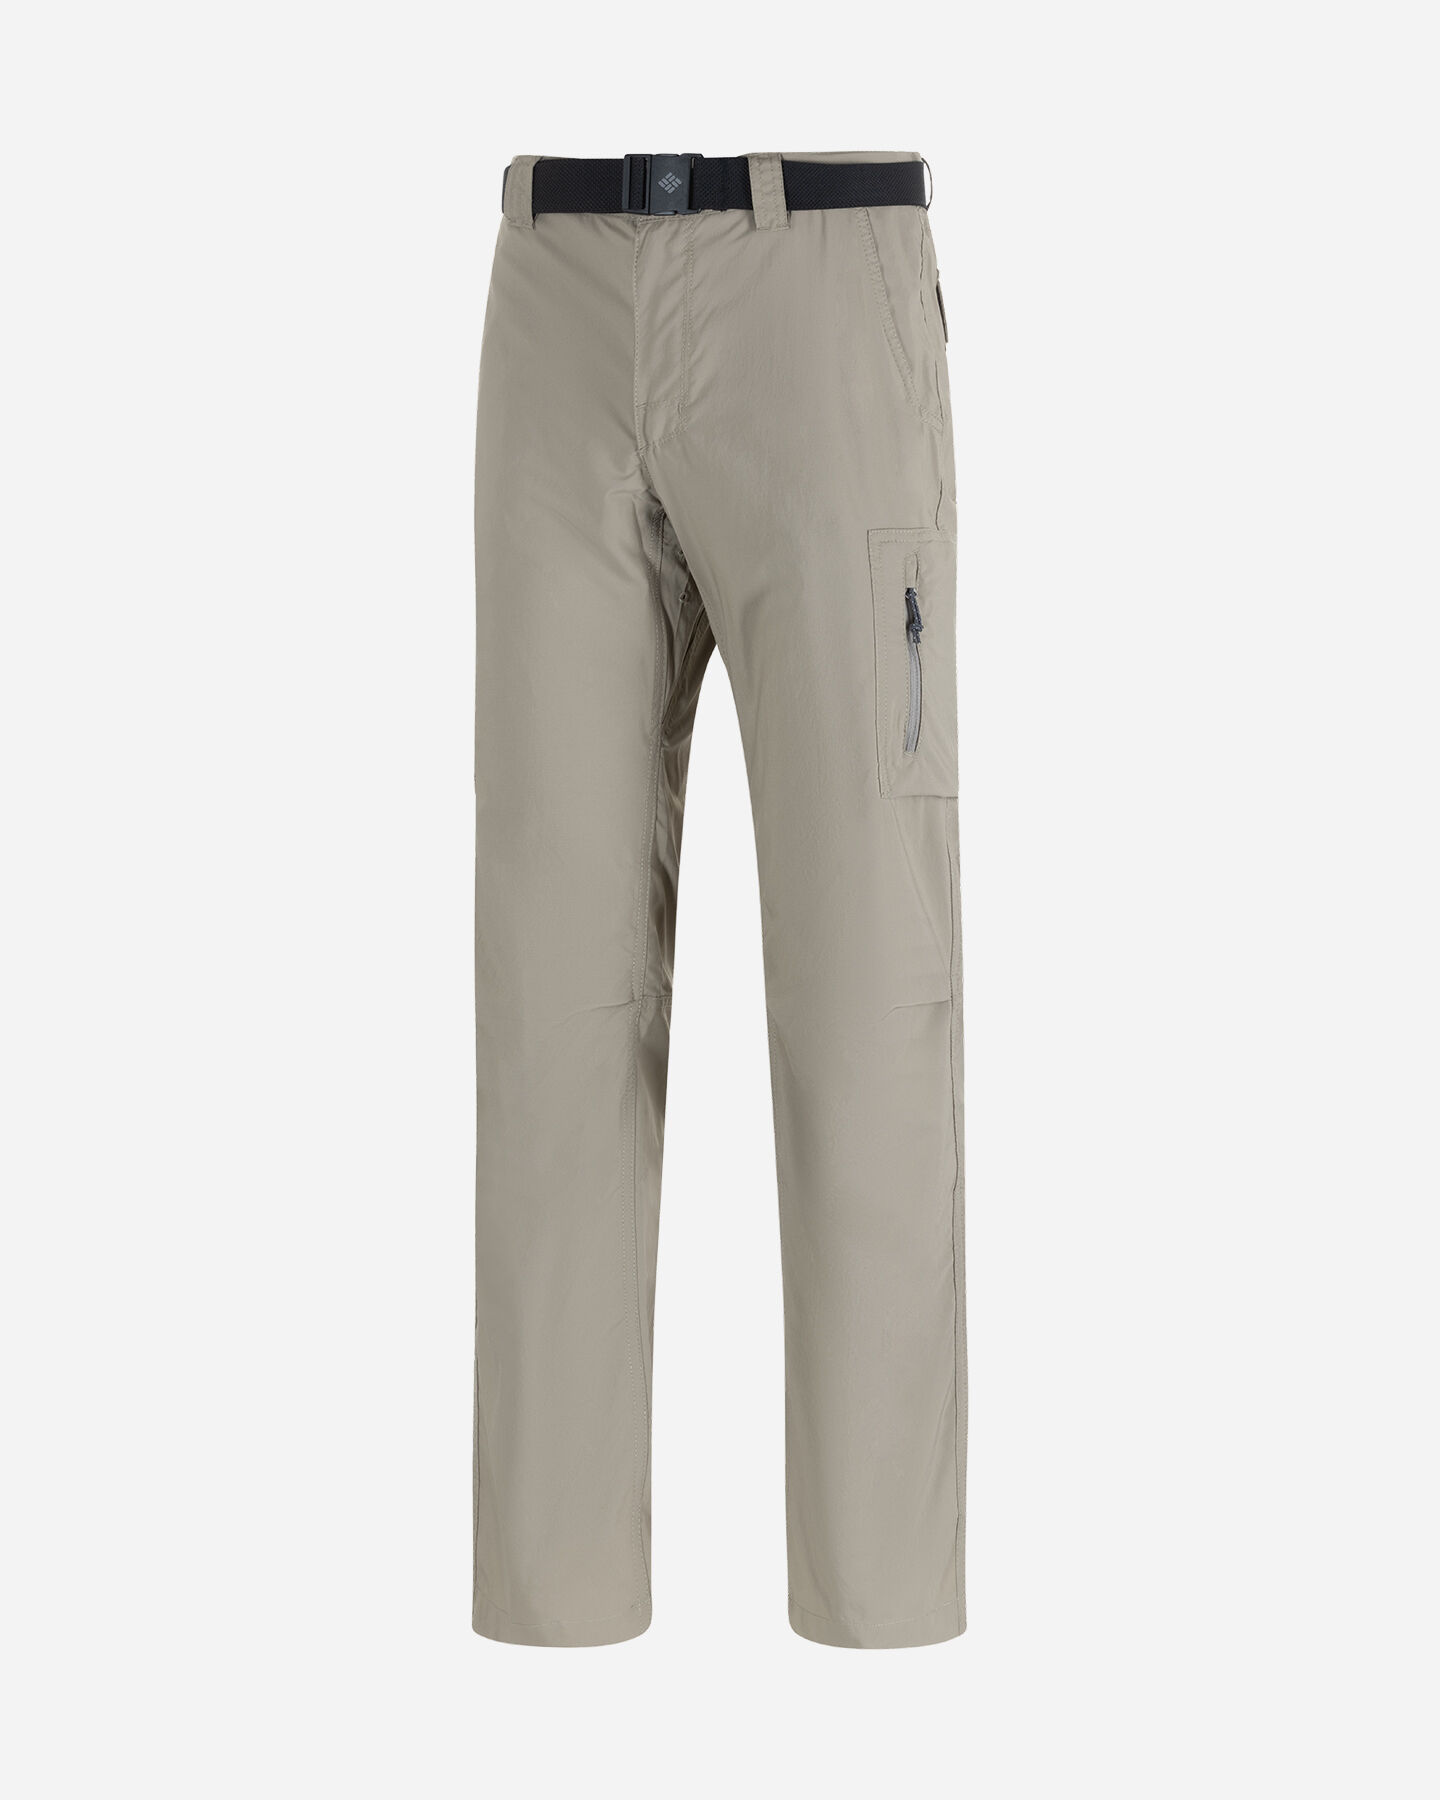  Pantalone outdoor COLUMBIA SILVER RIDGE M S5553524|221|3432 scatto 0